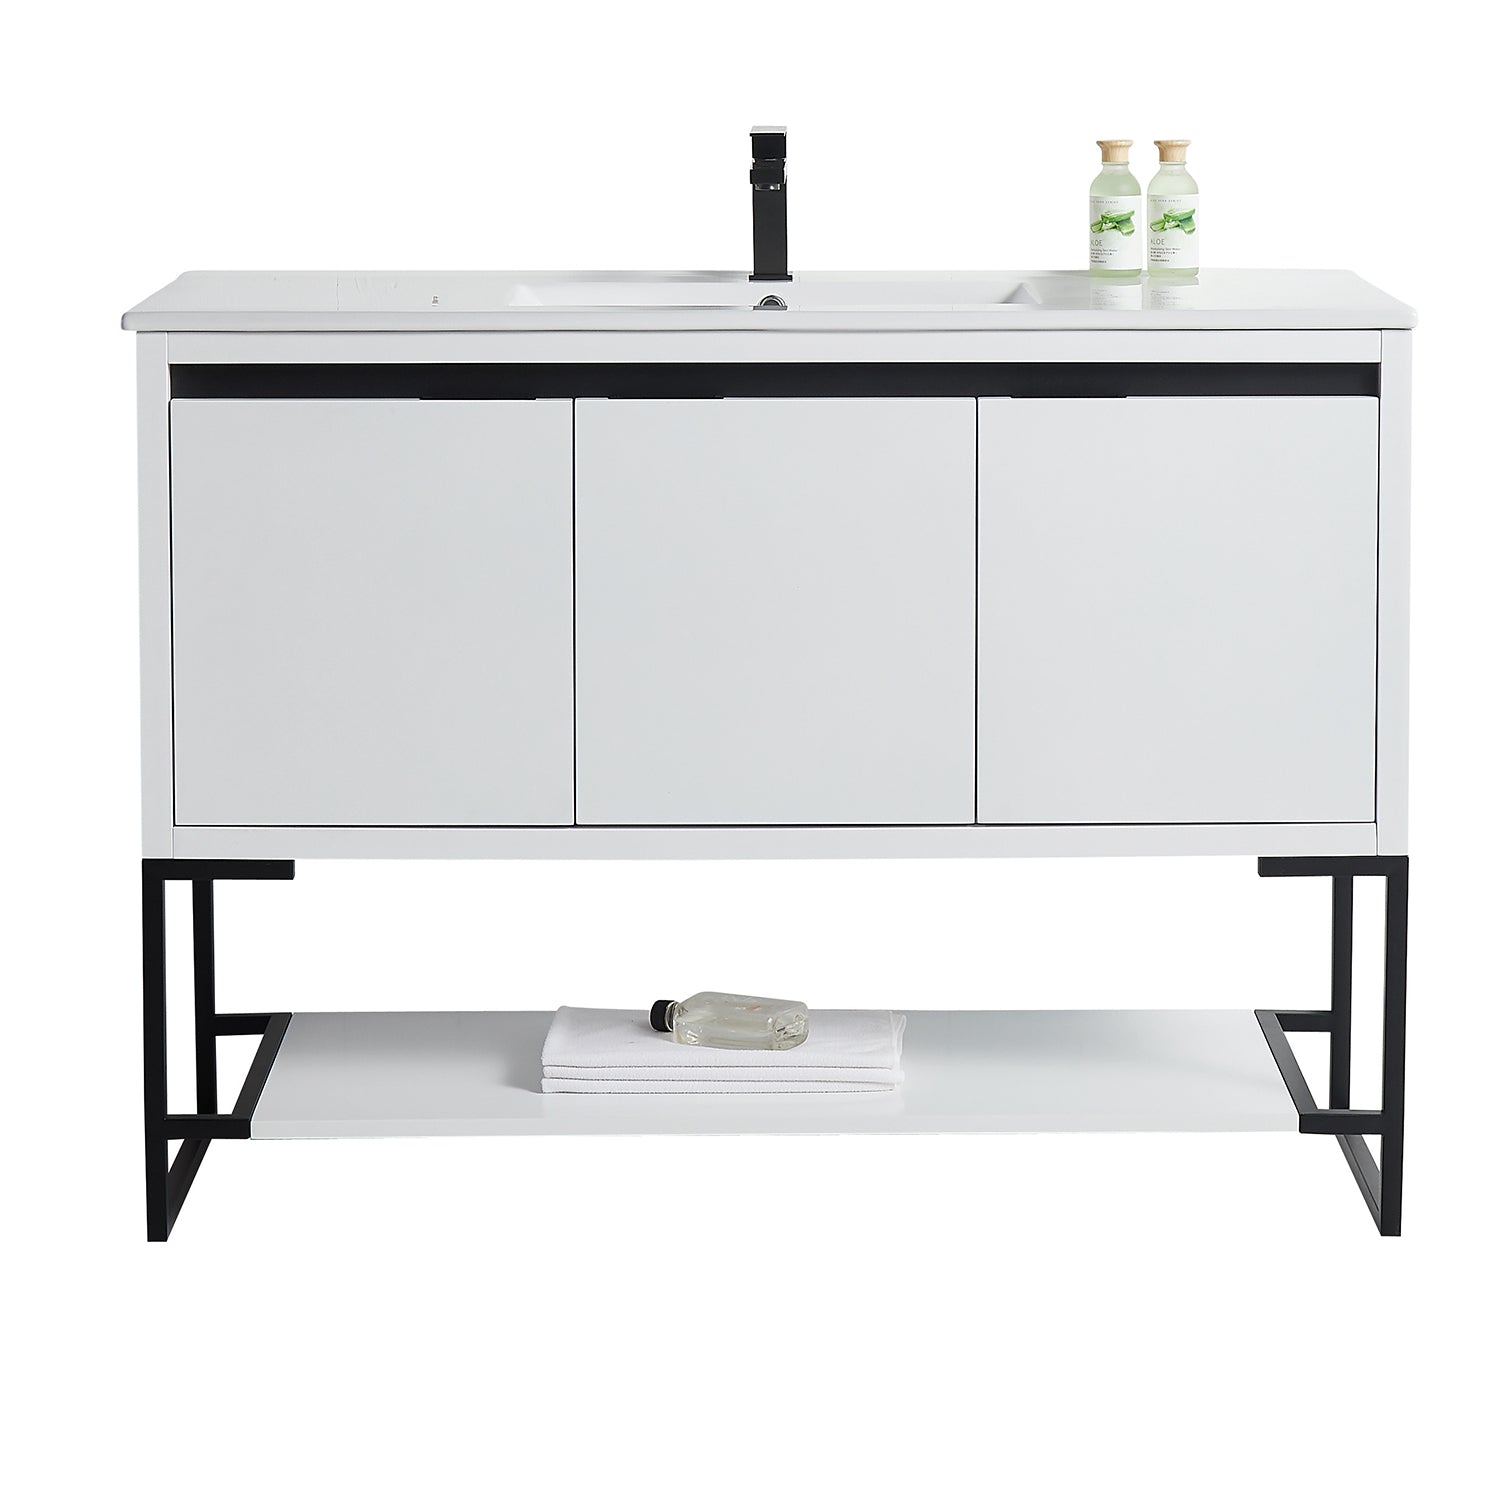 48 in. Freestanding Bathroom Vanity with Ceramics Counter Top Wood Cabinet in White Matt